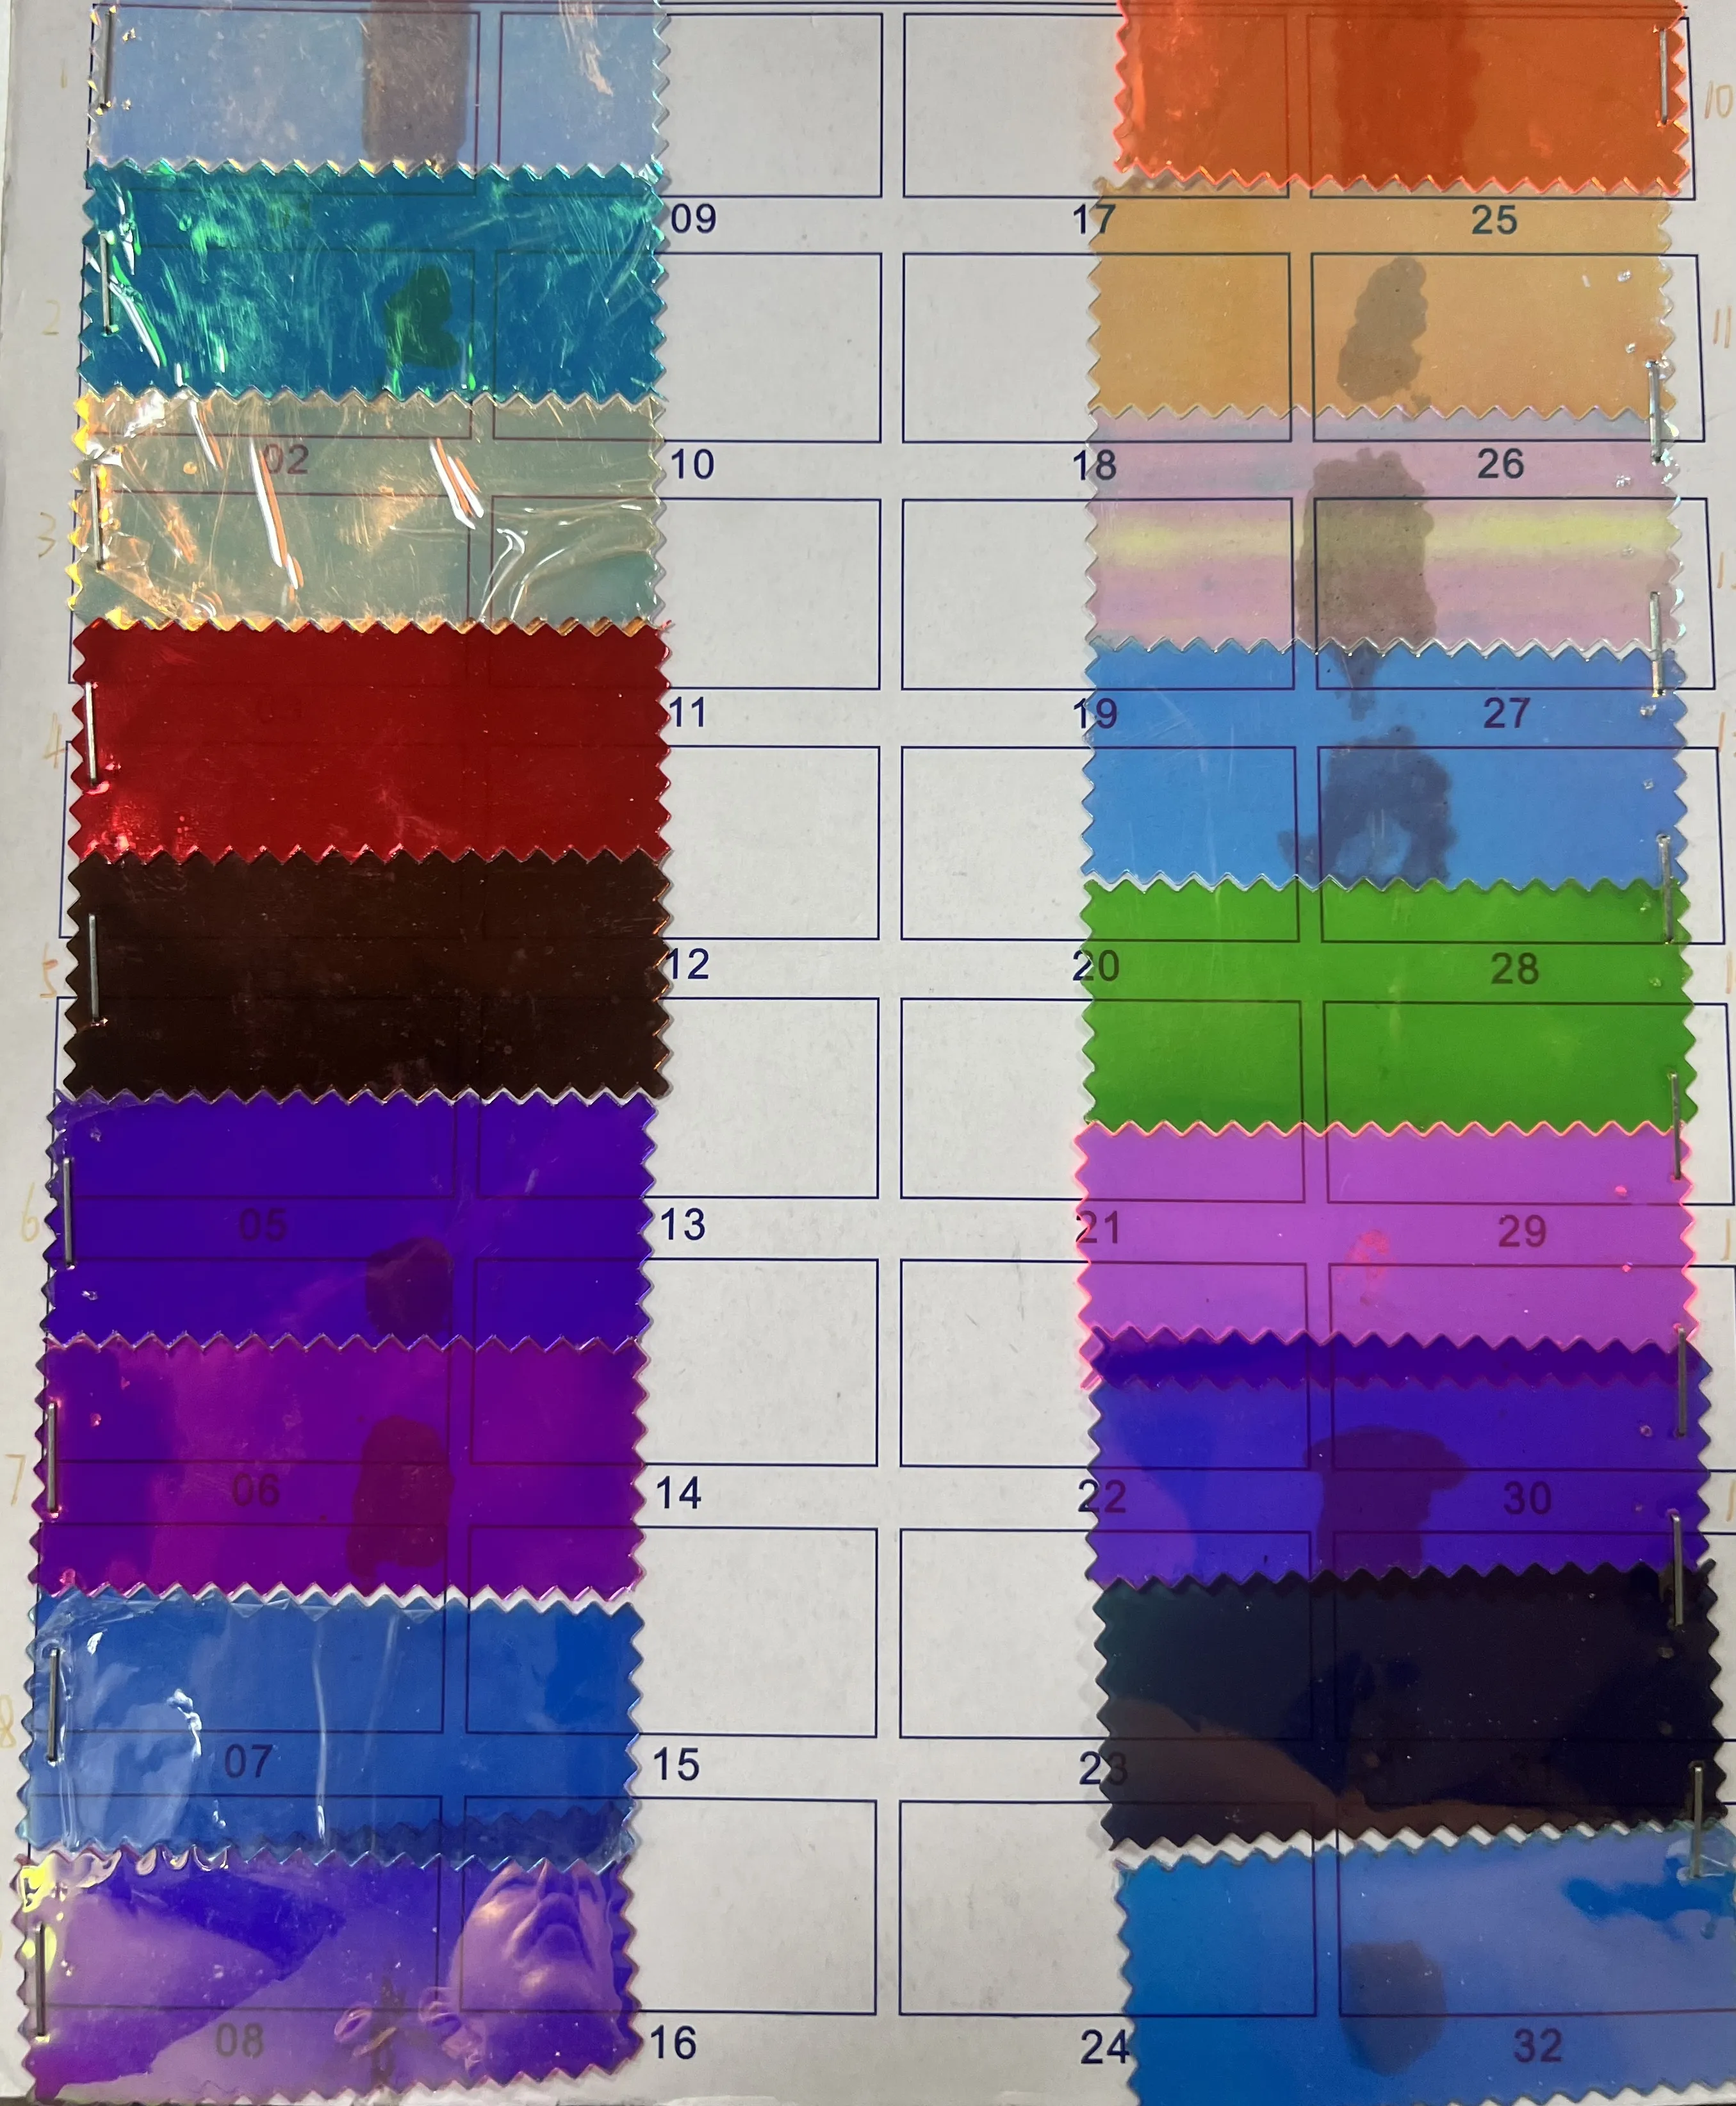 Film TPU arc-en-ciel en polyester écologique et film arc-en-ciel en PVC pour sacs paquet de verre film arc-en-ciel coloré